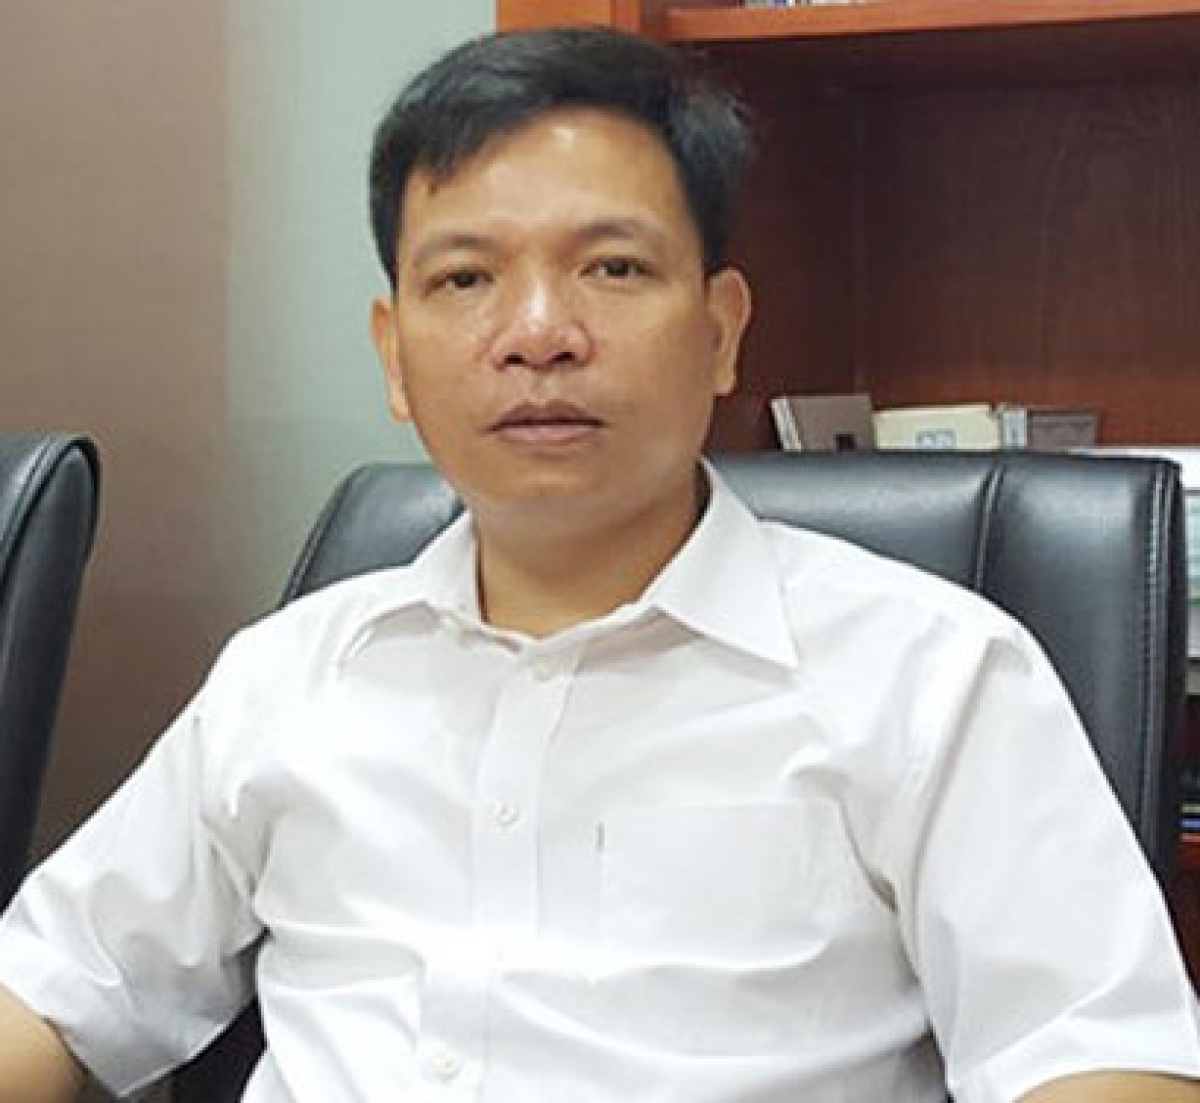 Không giảm án cho ông Nguyễn Nhật Cảm: Cán bộ 'nhúng chàm' không thể nương tay - Ảnh 2.